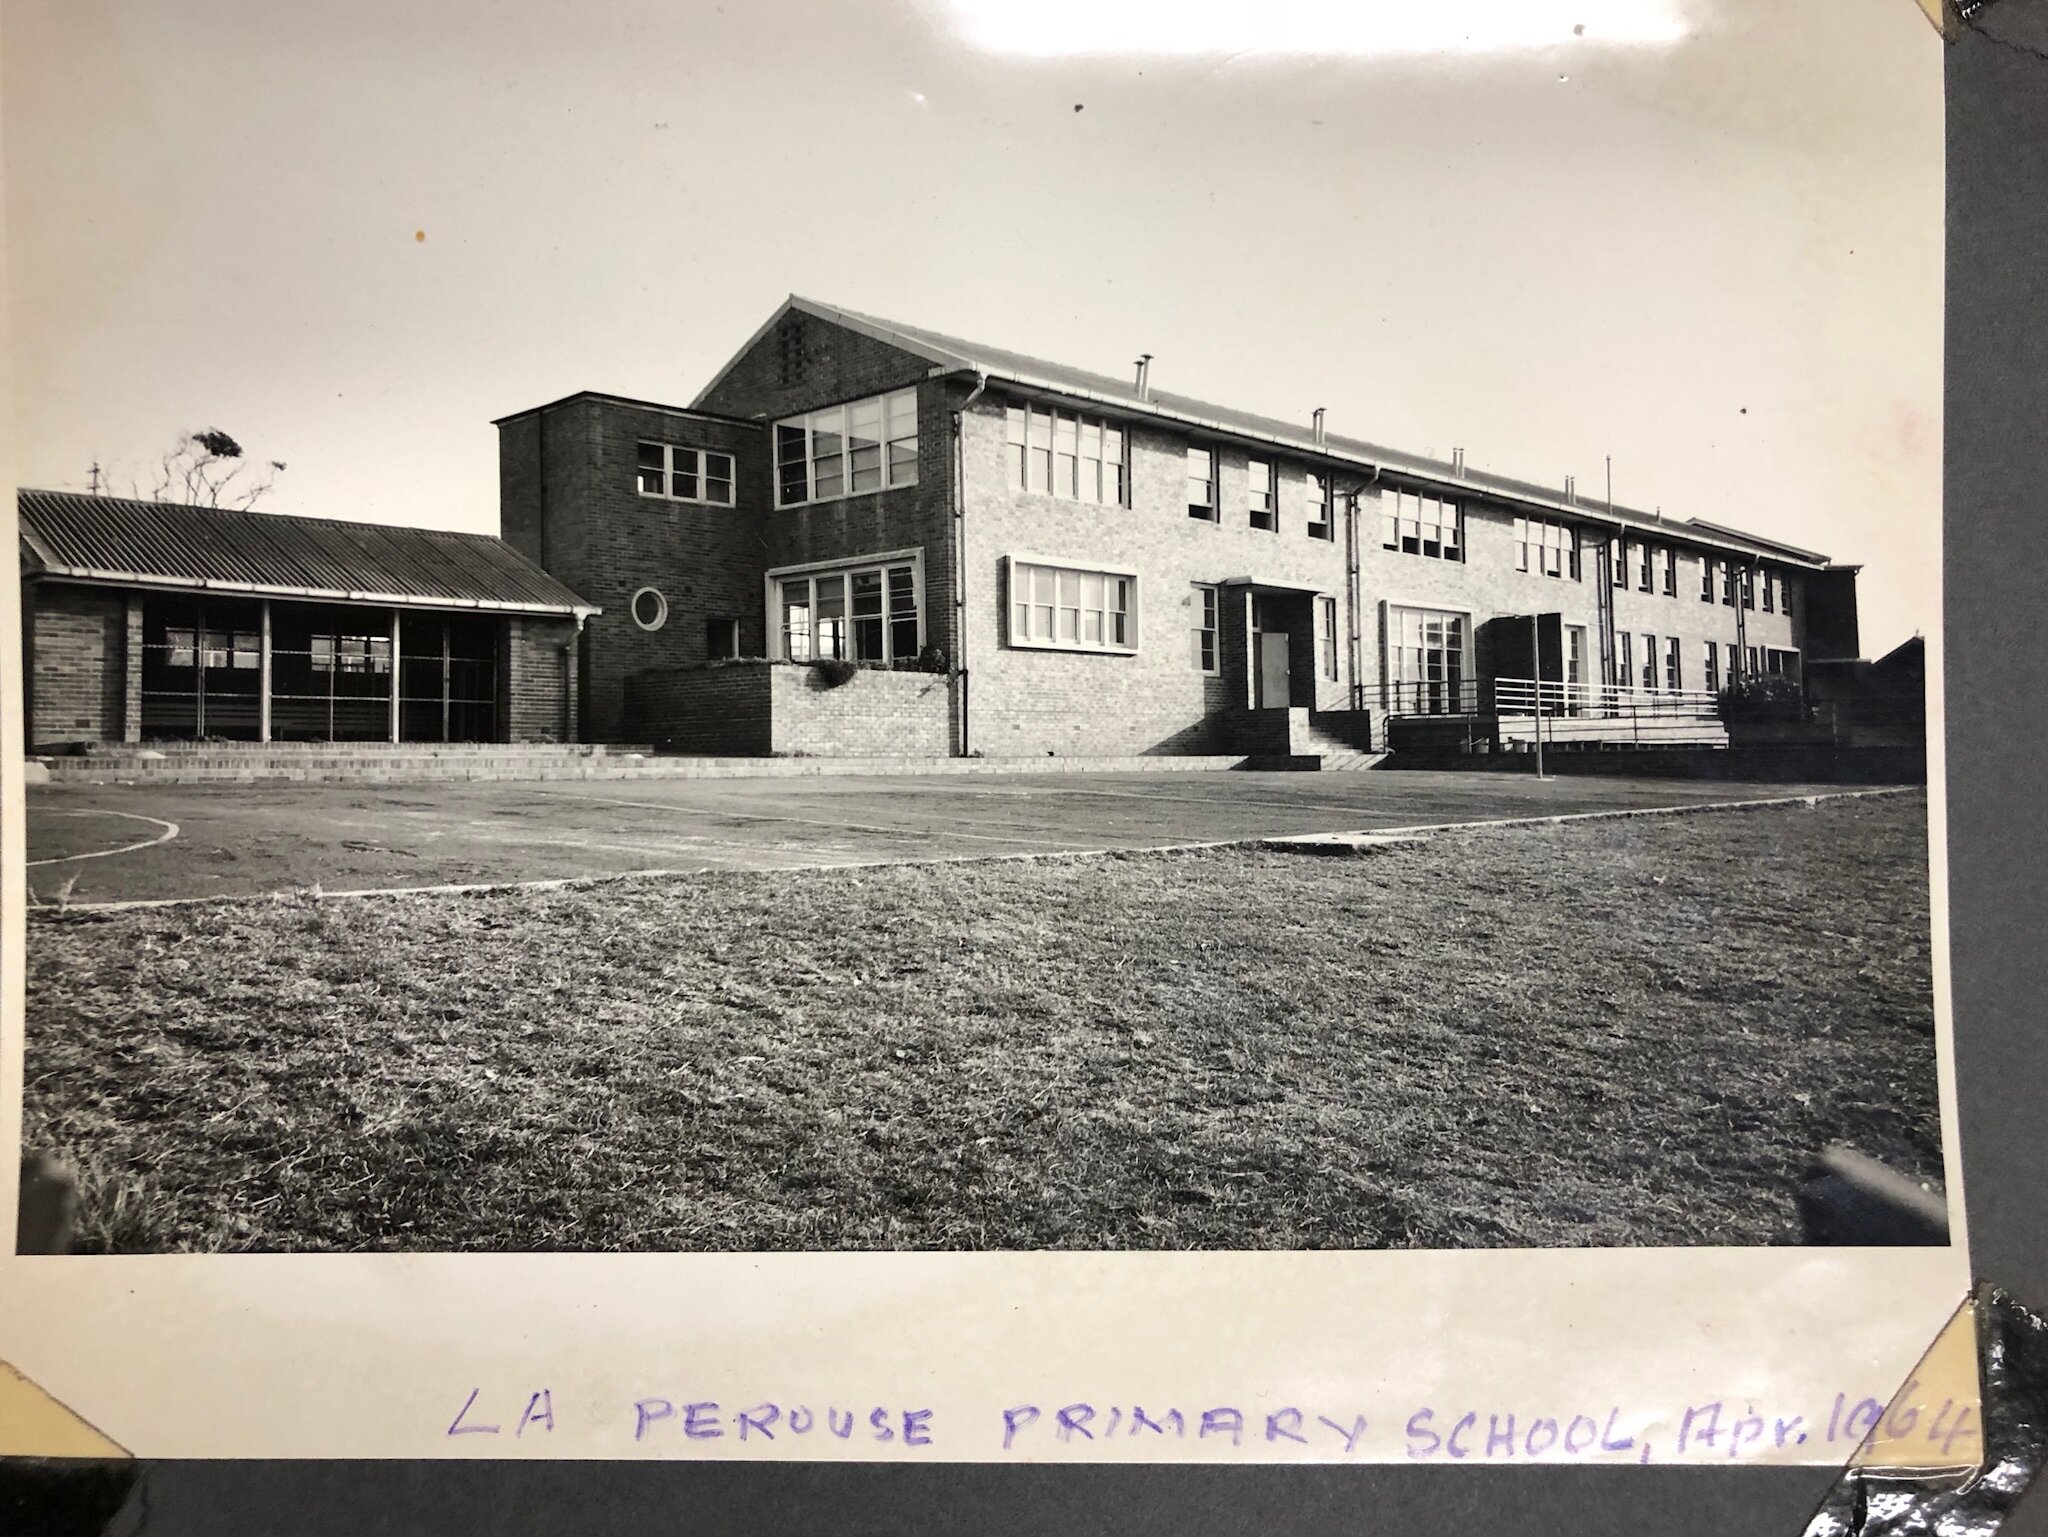 La Perouse Public School Building April 1964.